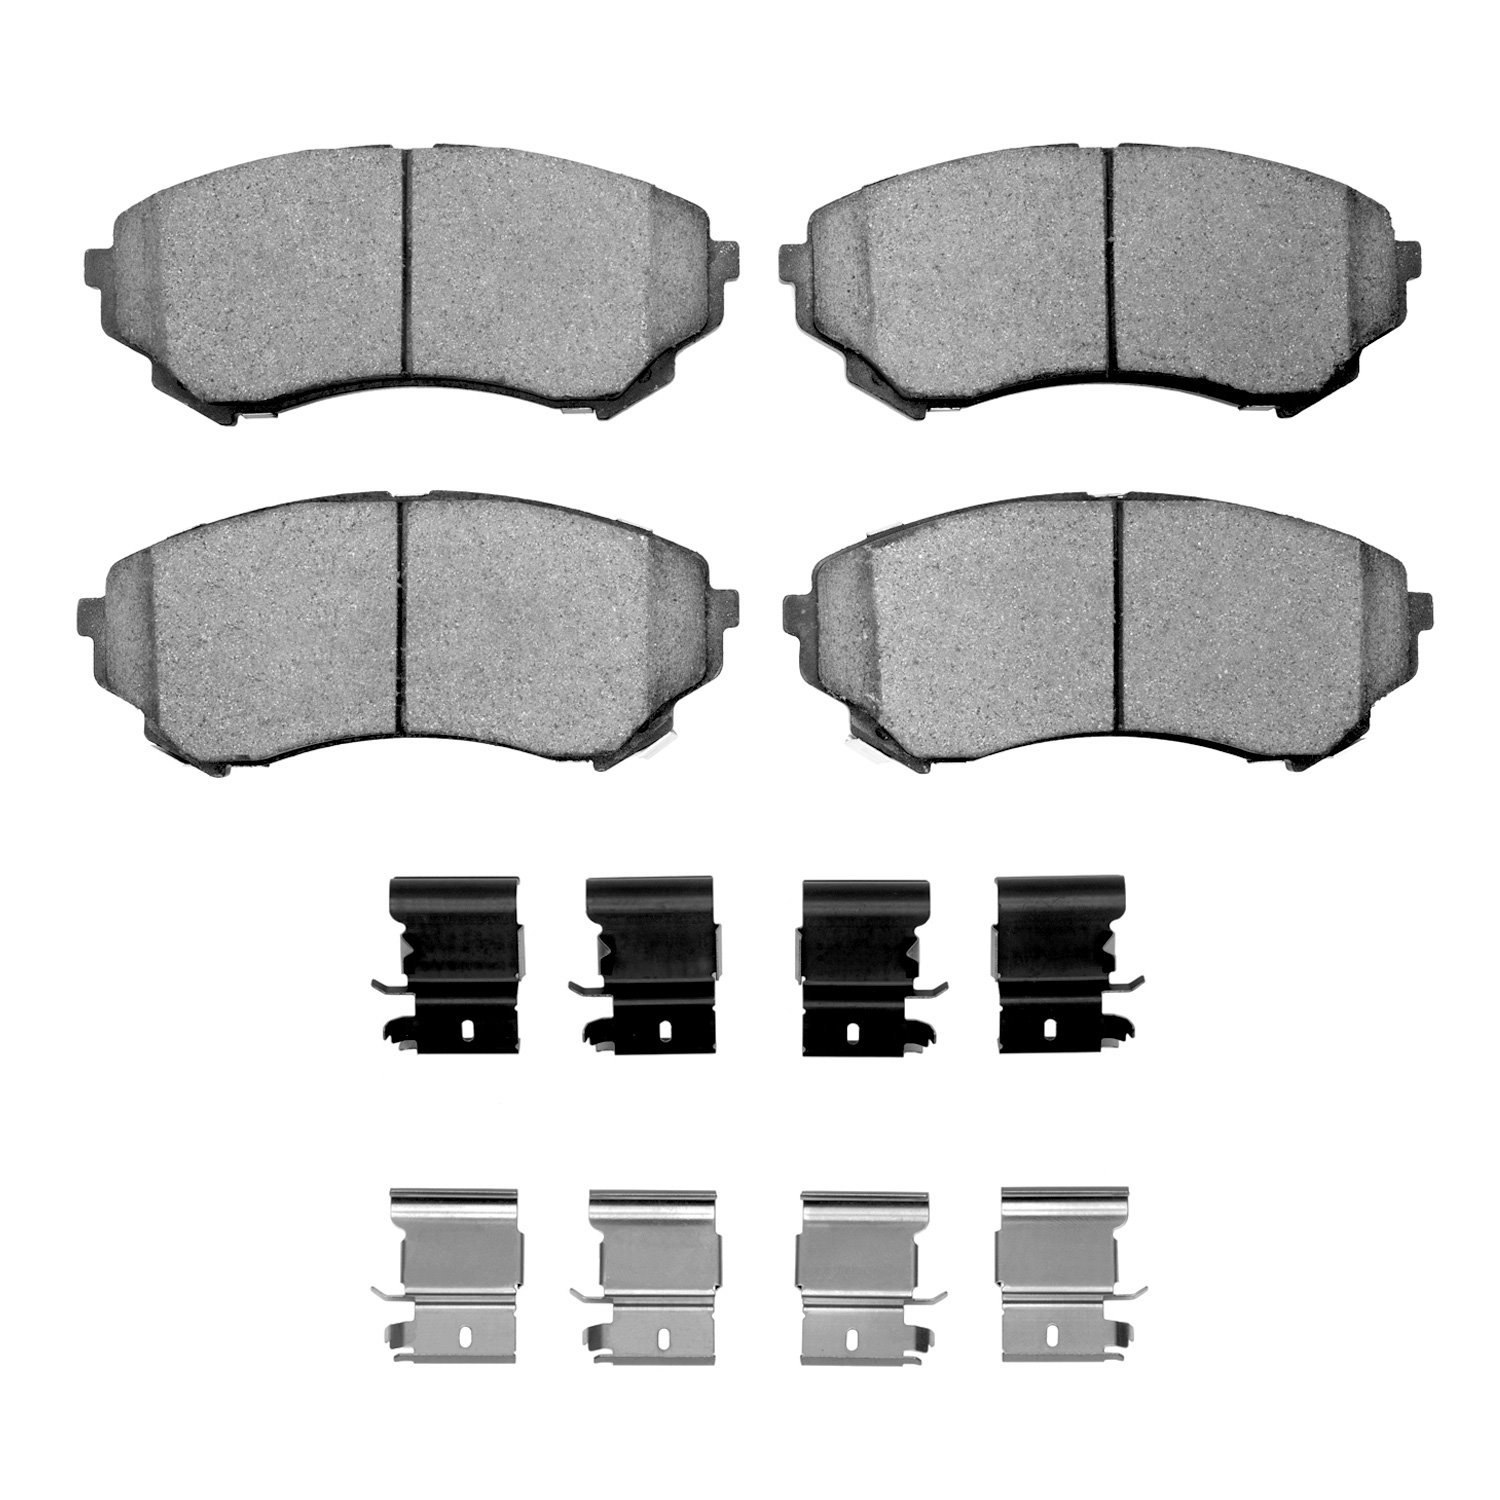 1551-1331-01 5000 Advanced Low-Metallic Brake Pads & Hardware Kit, 2008-2014 GM, Position: Front